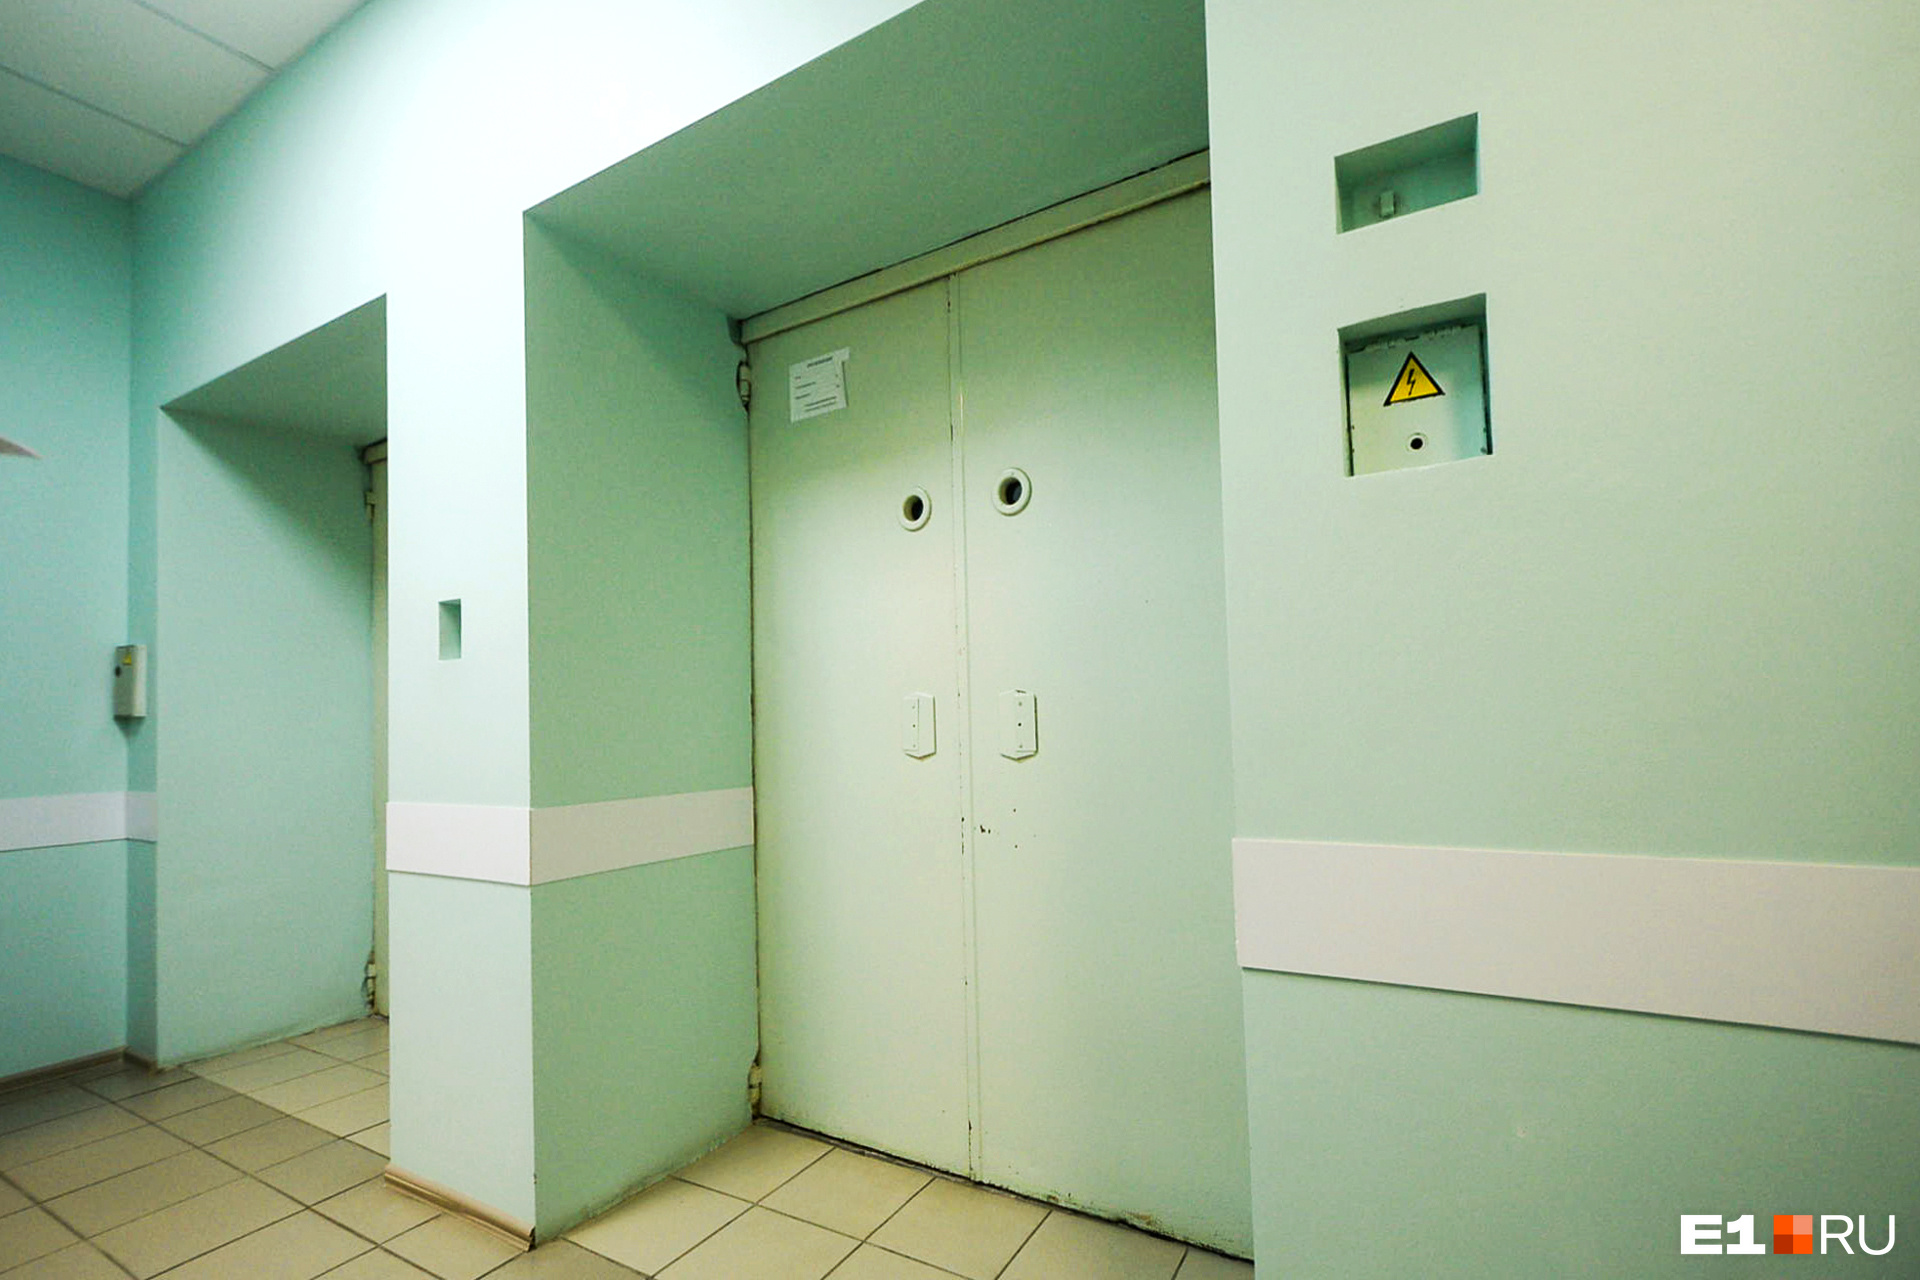 В роддоме работают два лифта, на которых пациентки поднимаются в родовые